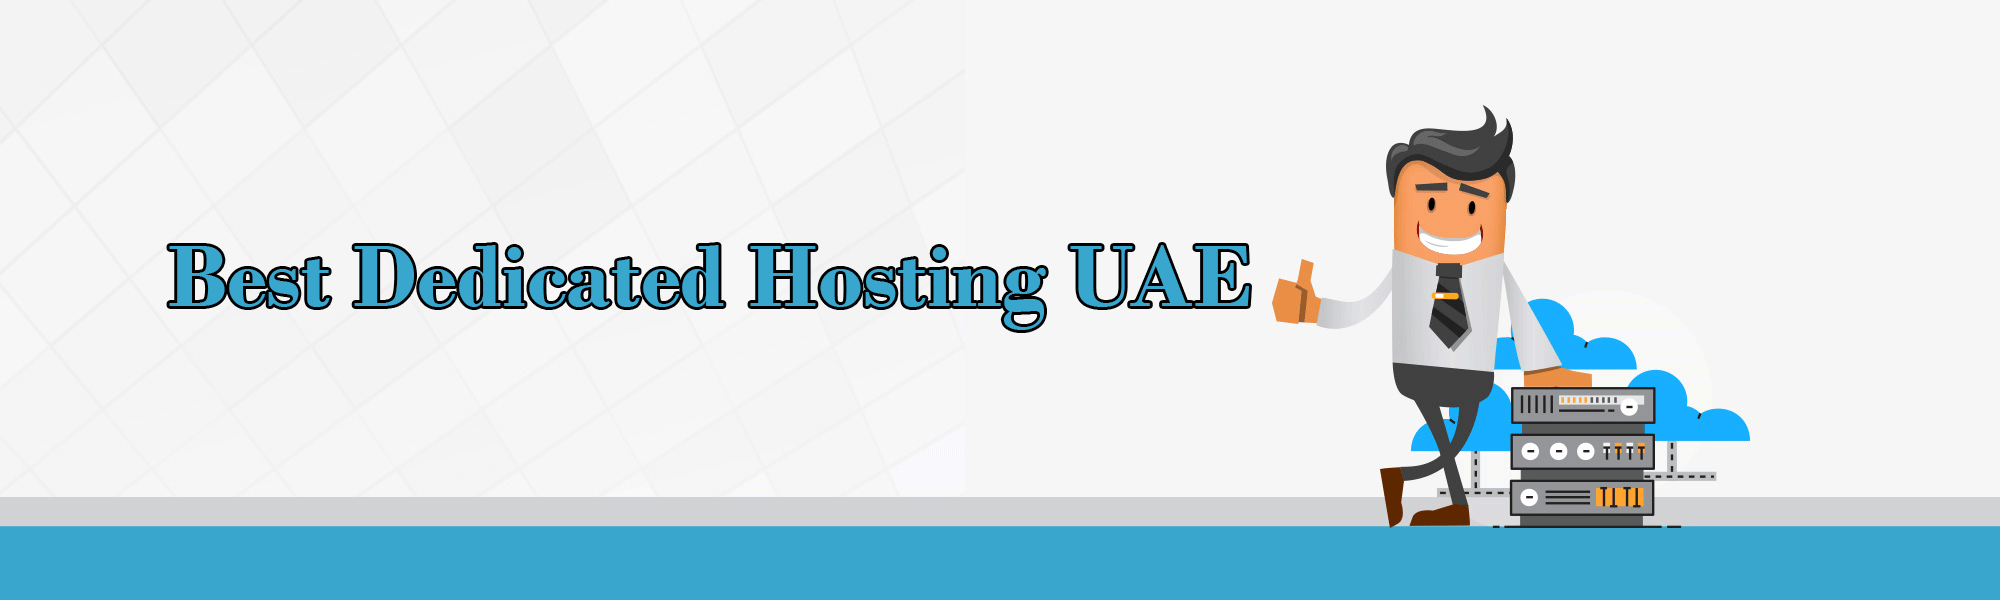 Best Dedicated Hosting UAE